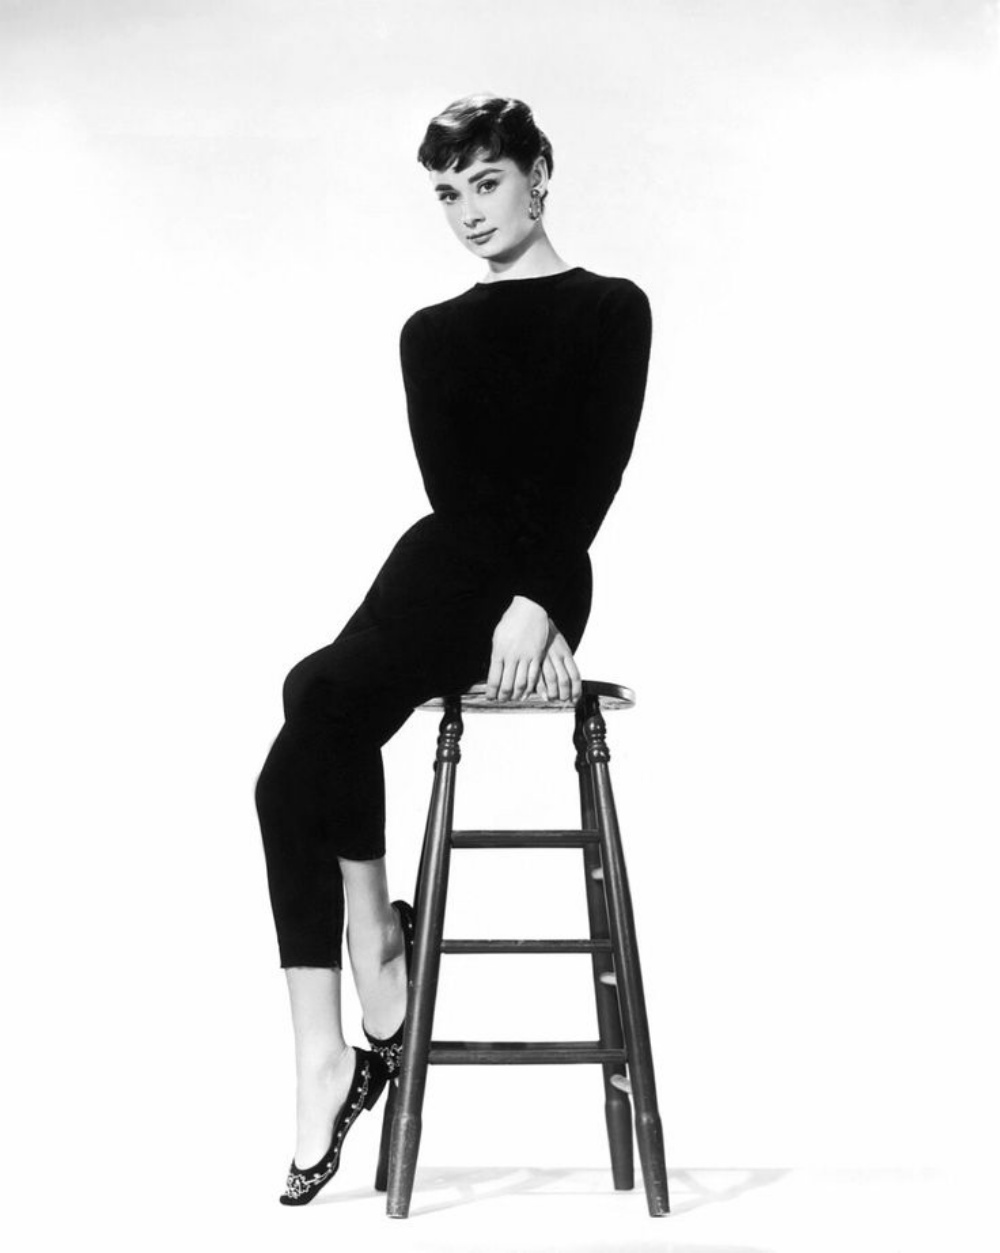 Đôi giày bellat gắn liền với huyền thoại màn bạc Audrey Hepburn. 